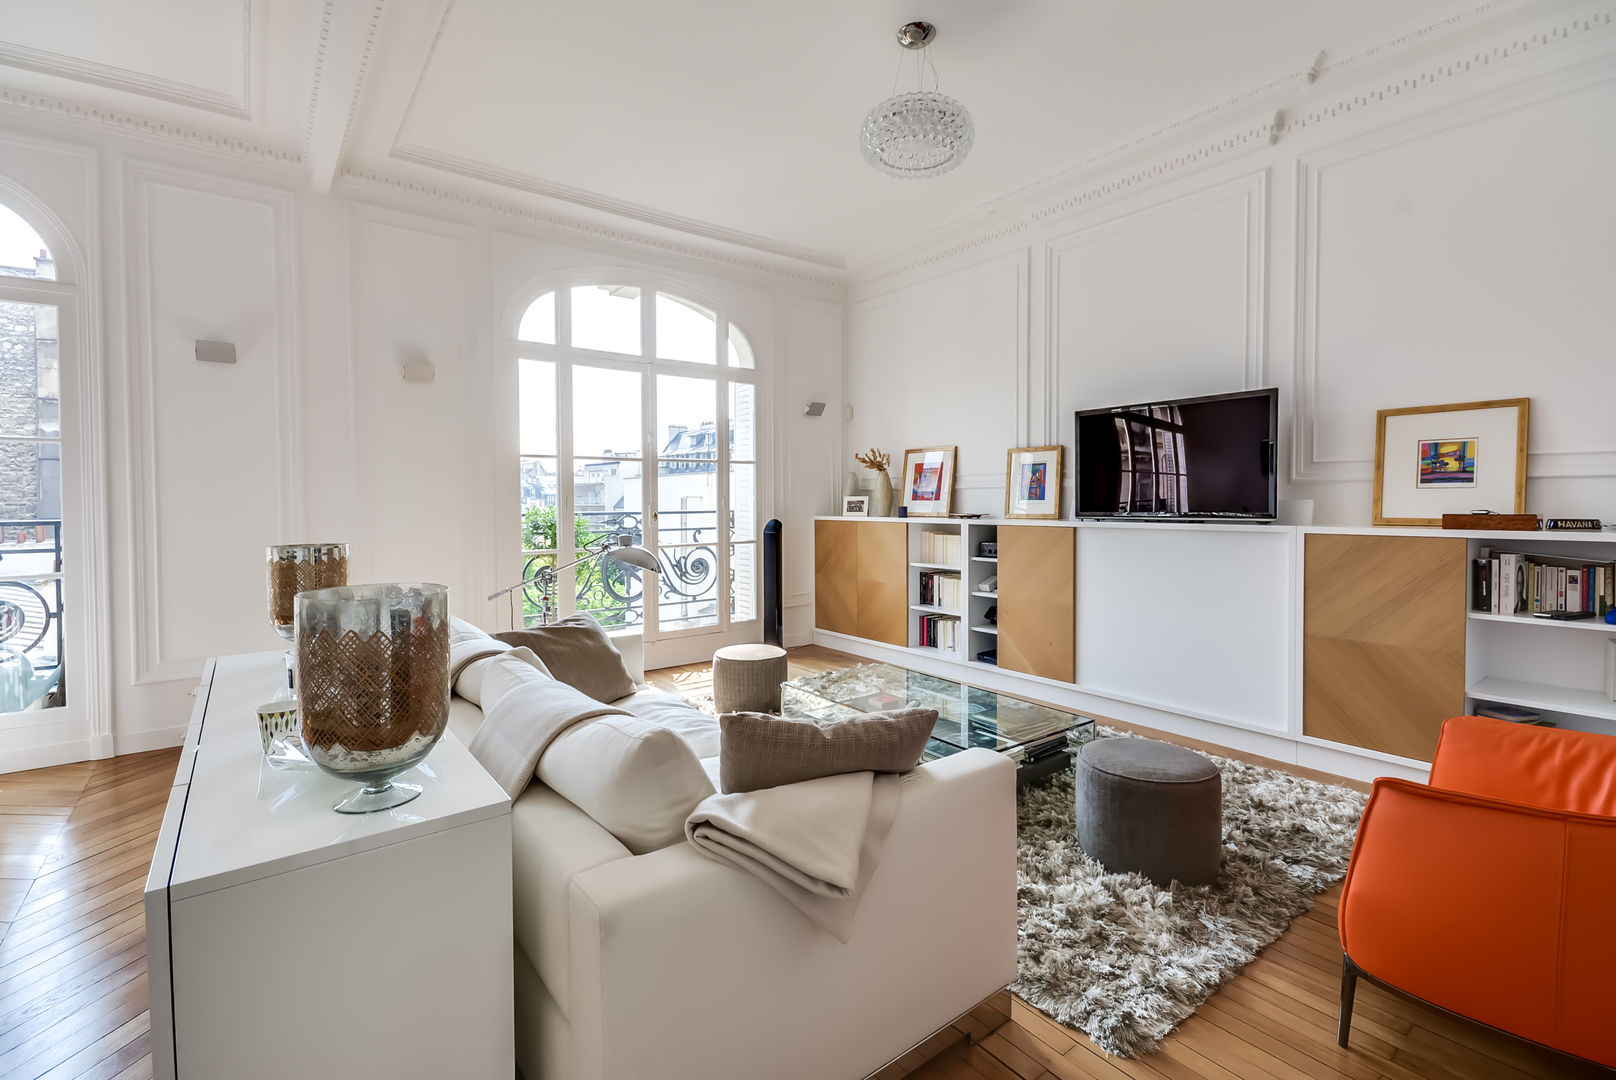 Un appartement haussmanien revisité - Paris 16e, ATELIER FB ATELIER FB Salones de estilo moderno